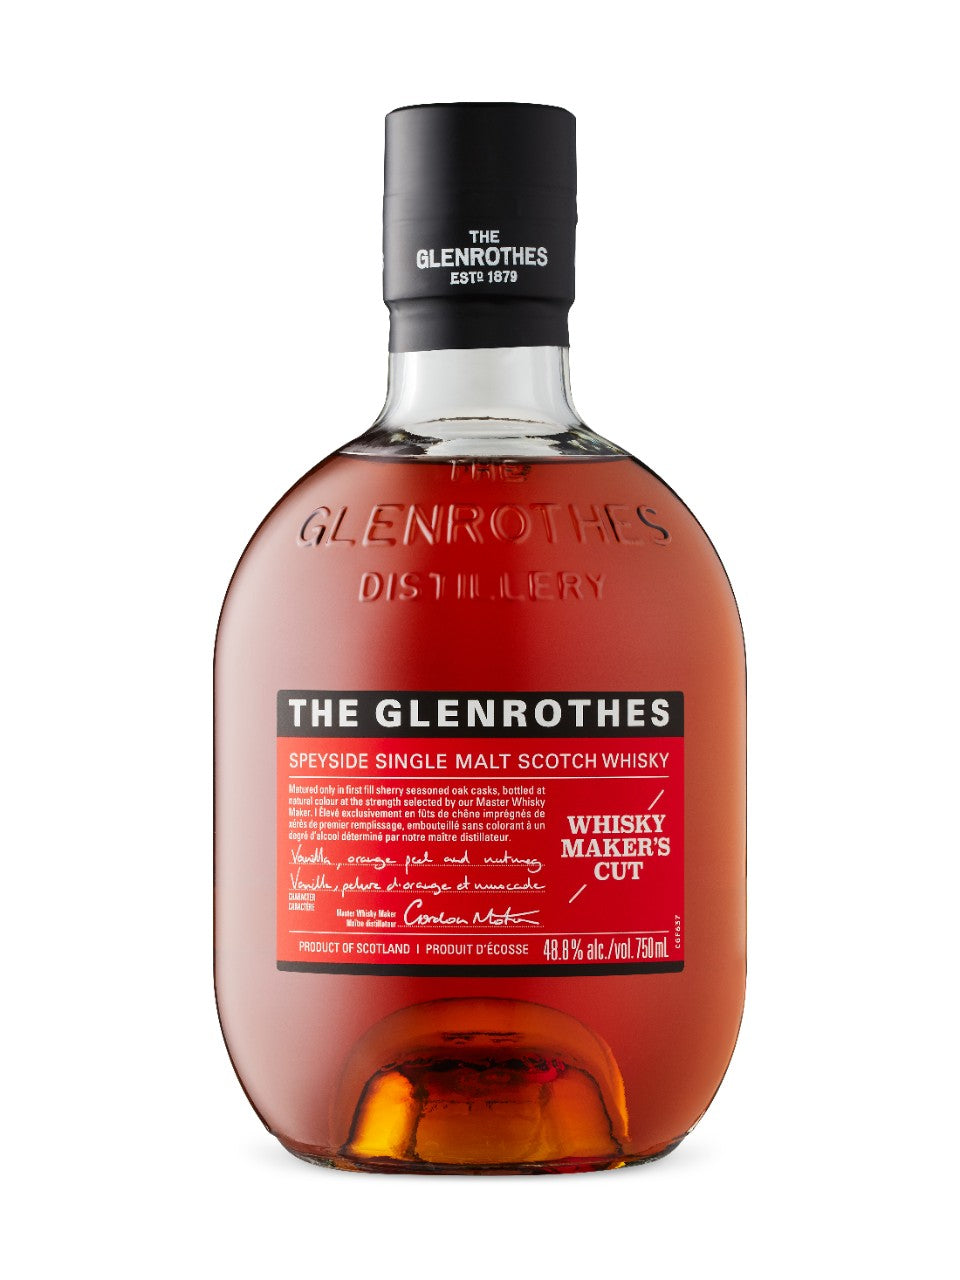 Glenrothes Whisky Maker's Cut 750 ml bottle